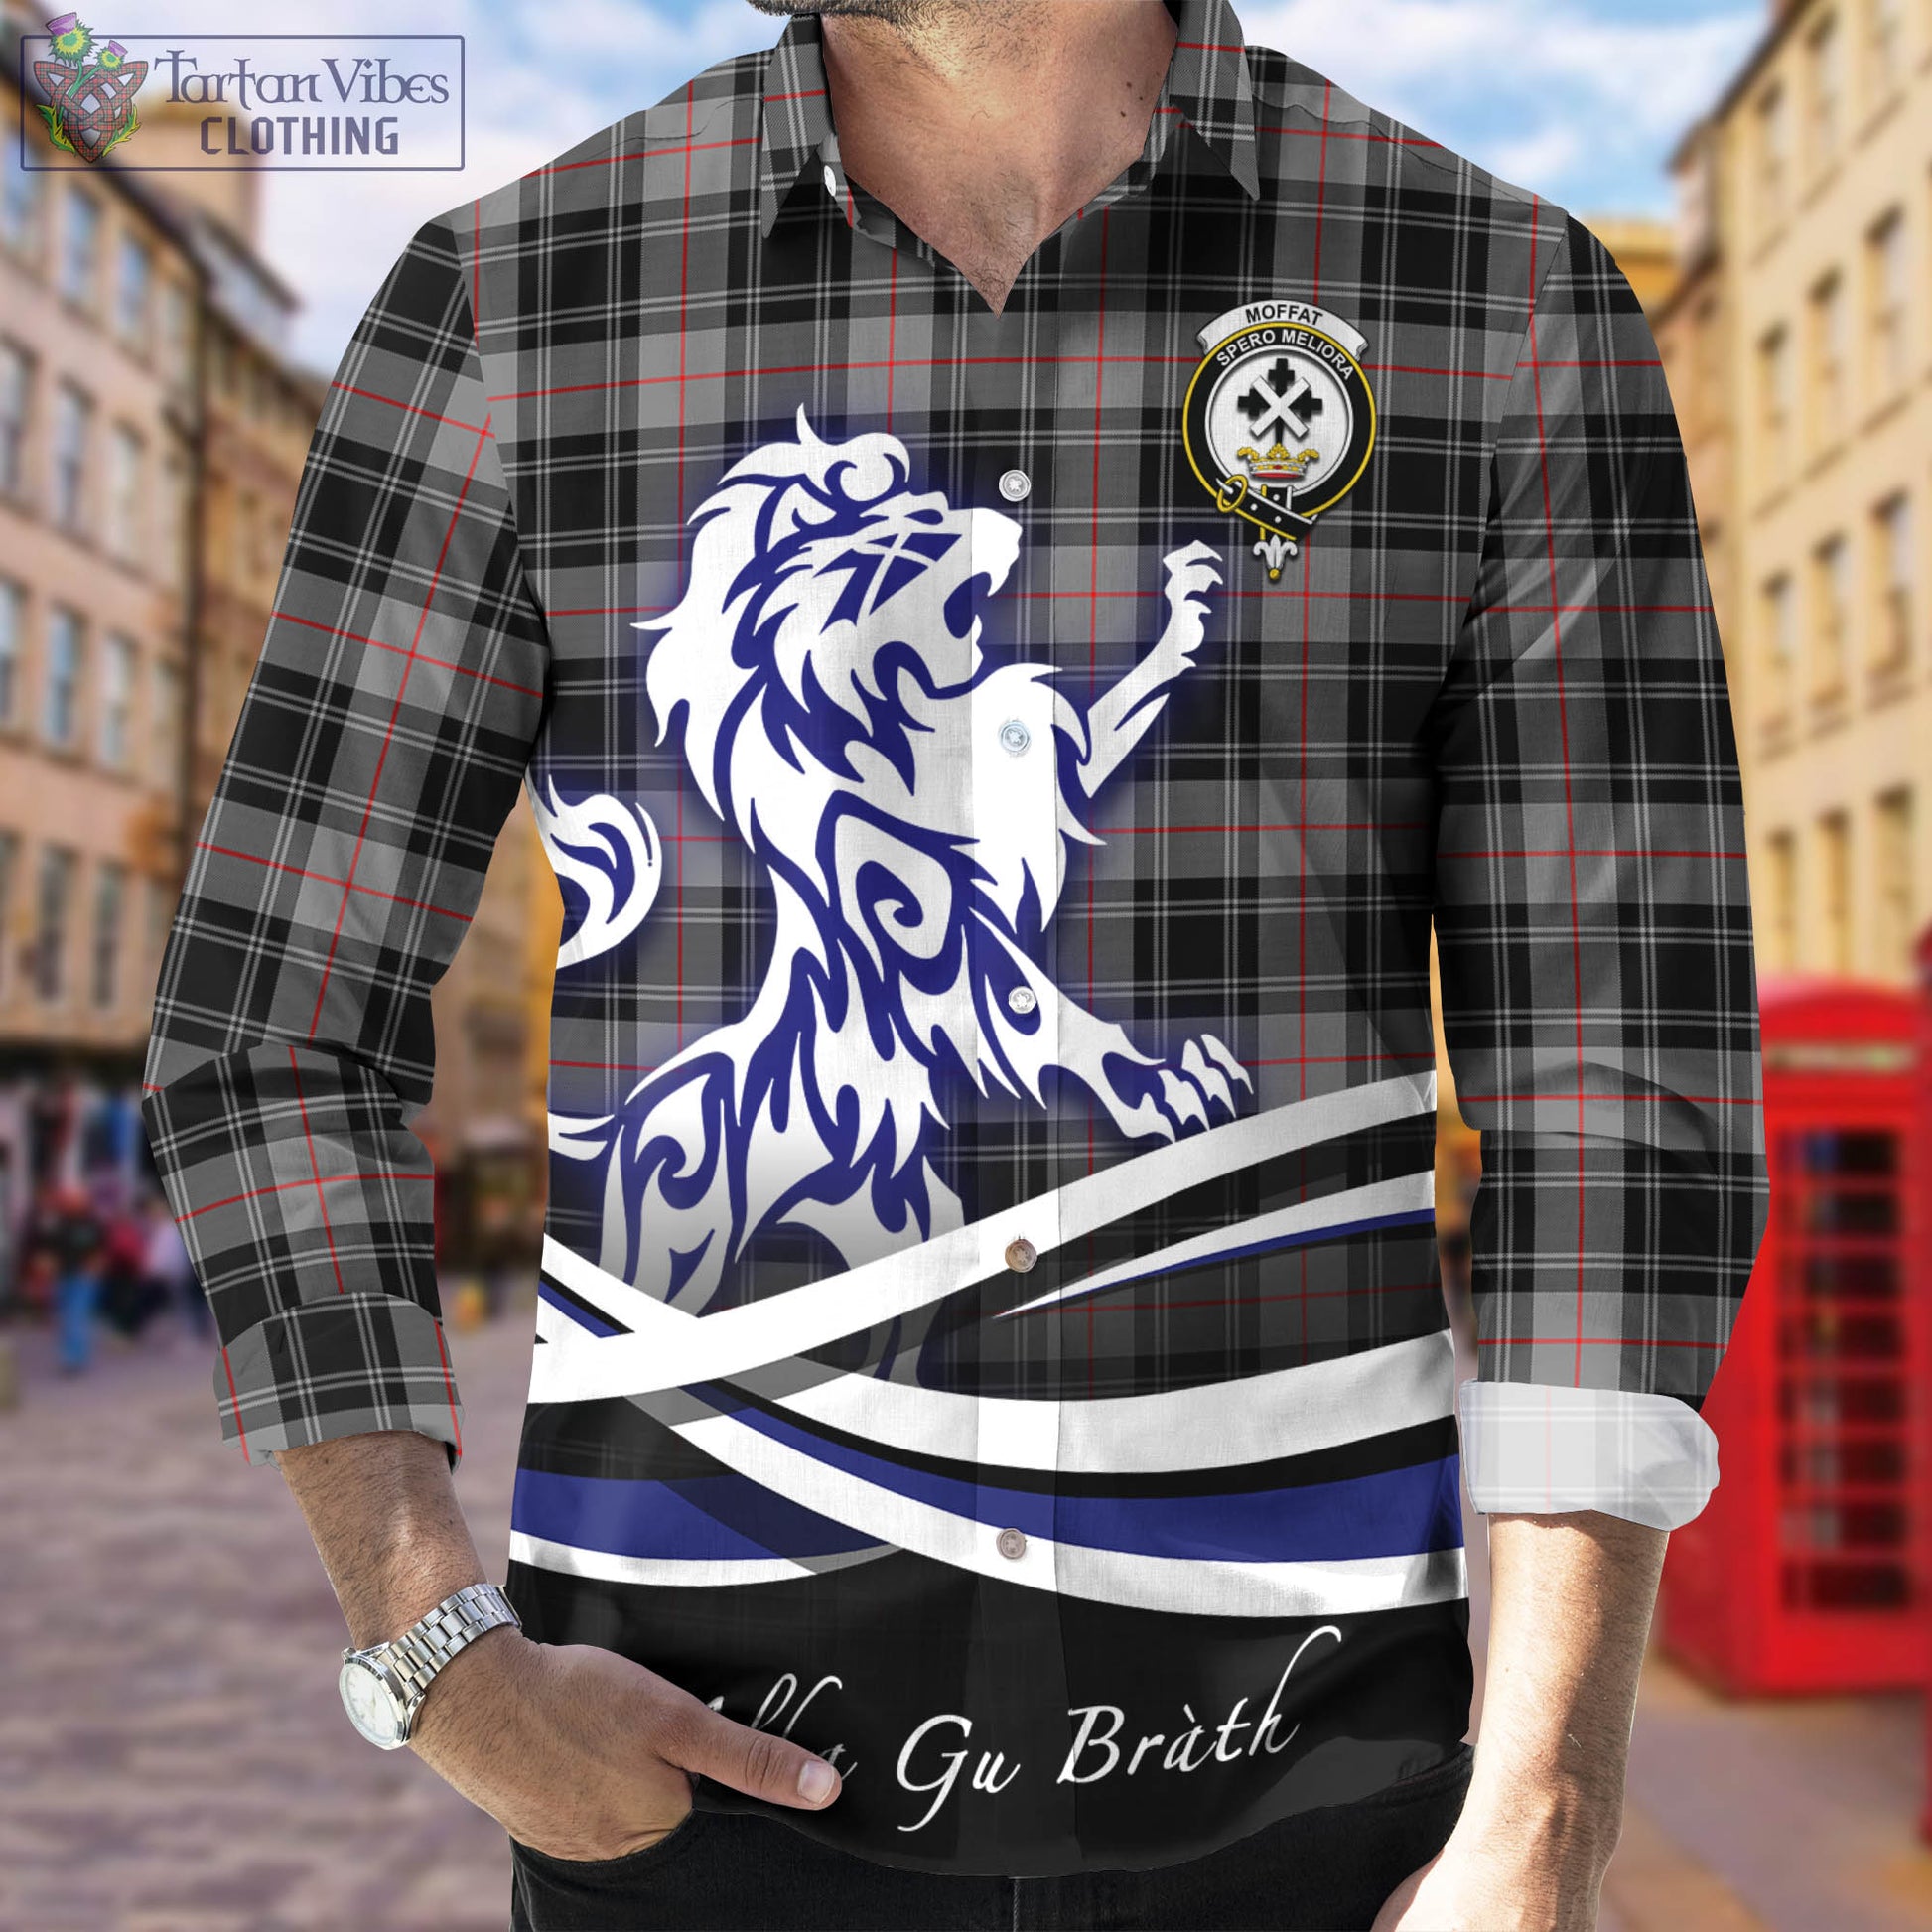 moffat-modern-tartan-long-sleeve-button-up-shirt-with-alba-gu-brath-regal-lion-emblem